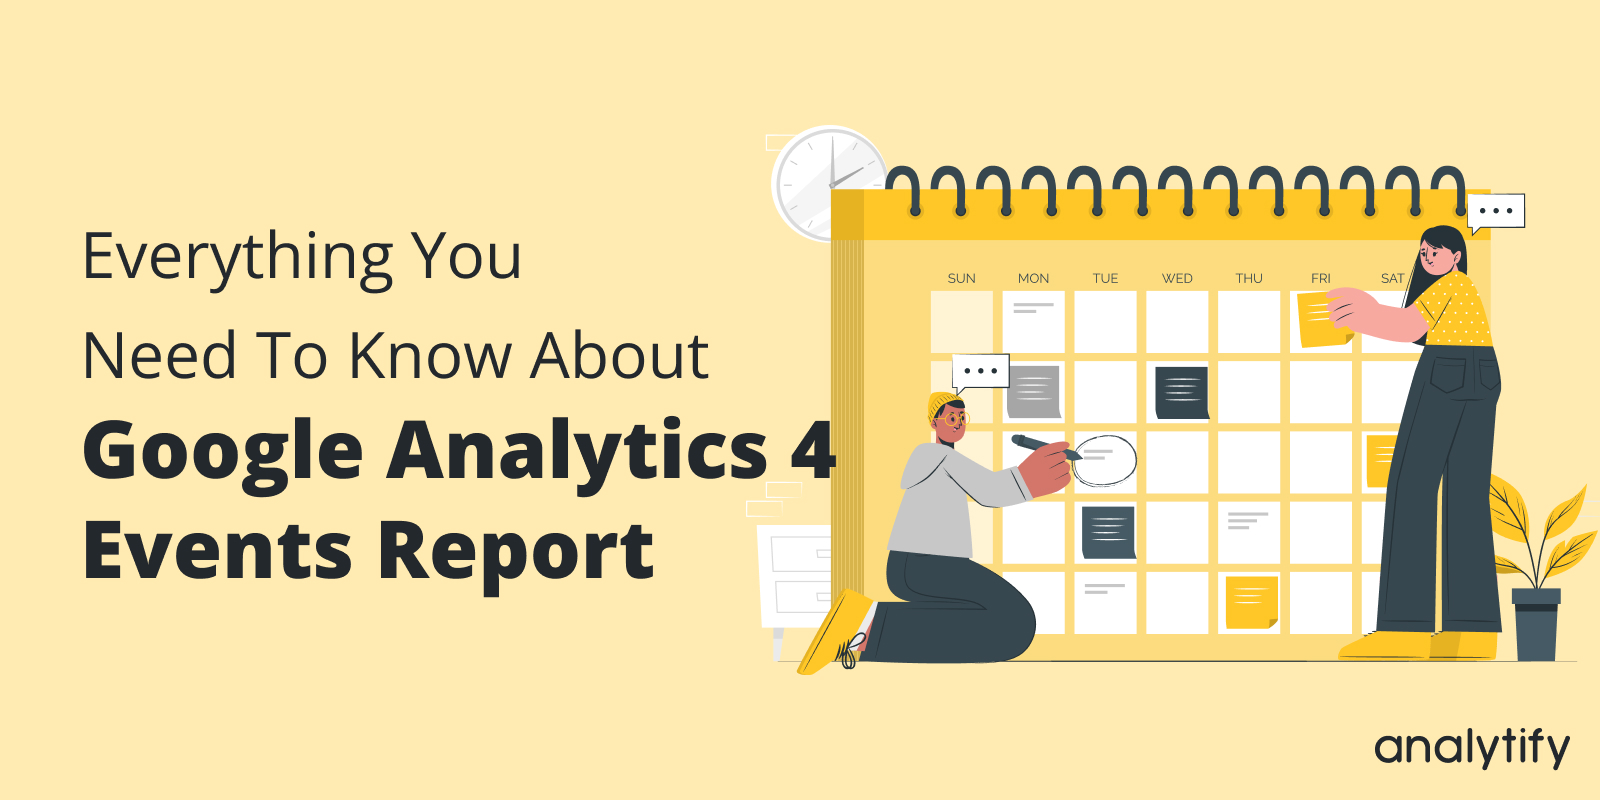 Google Analytics 4 Events Report